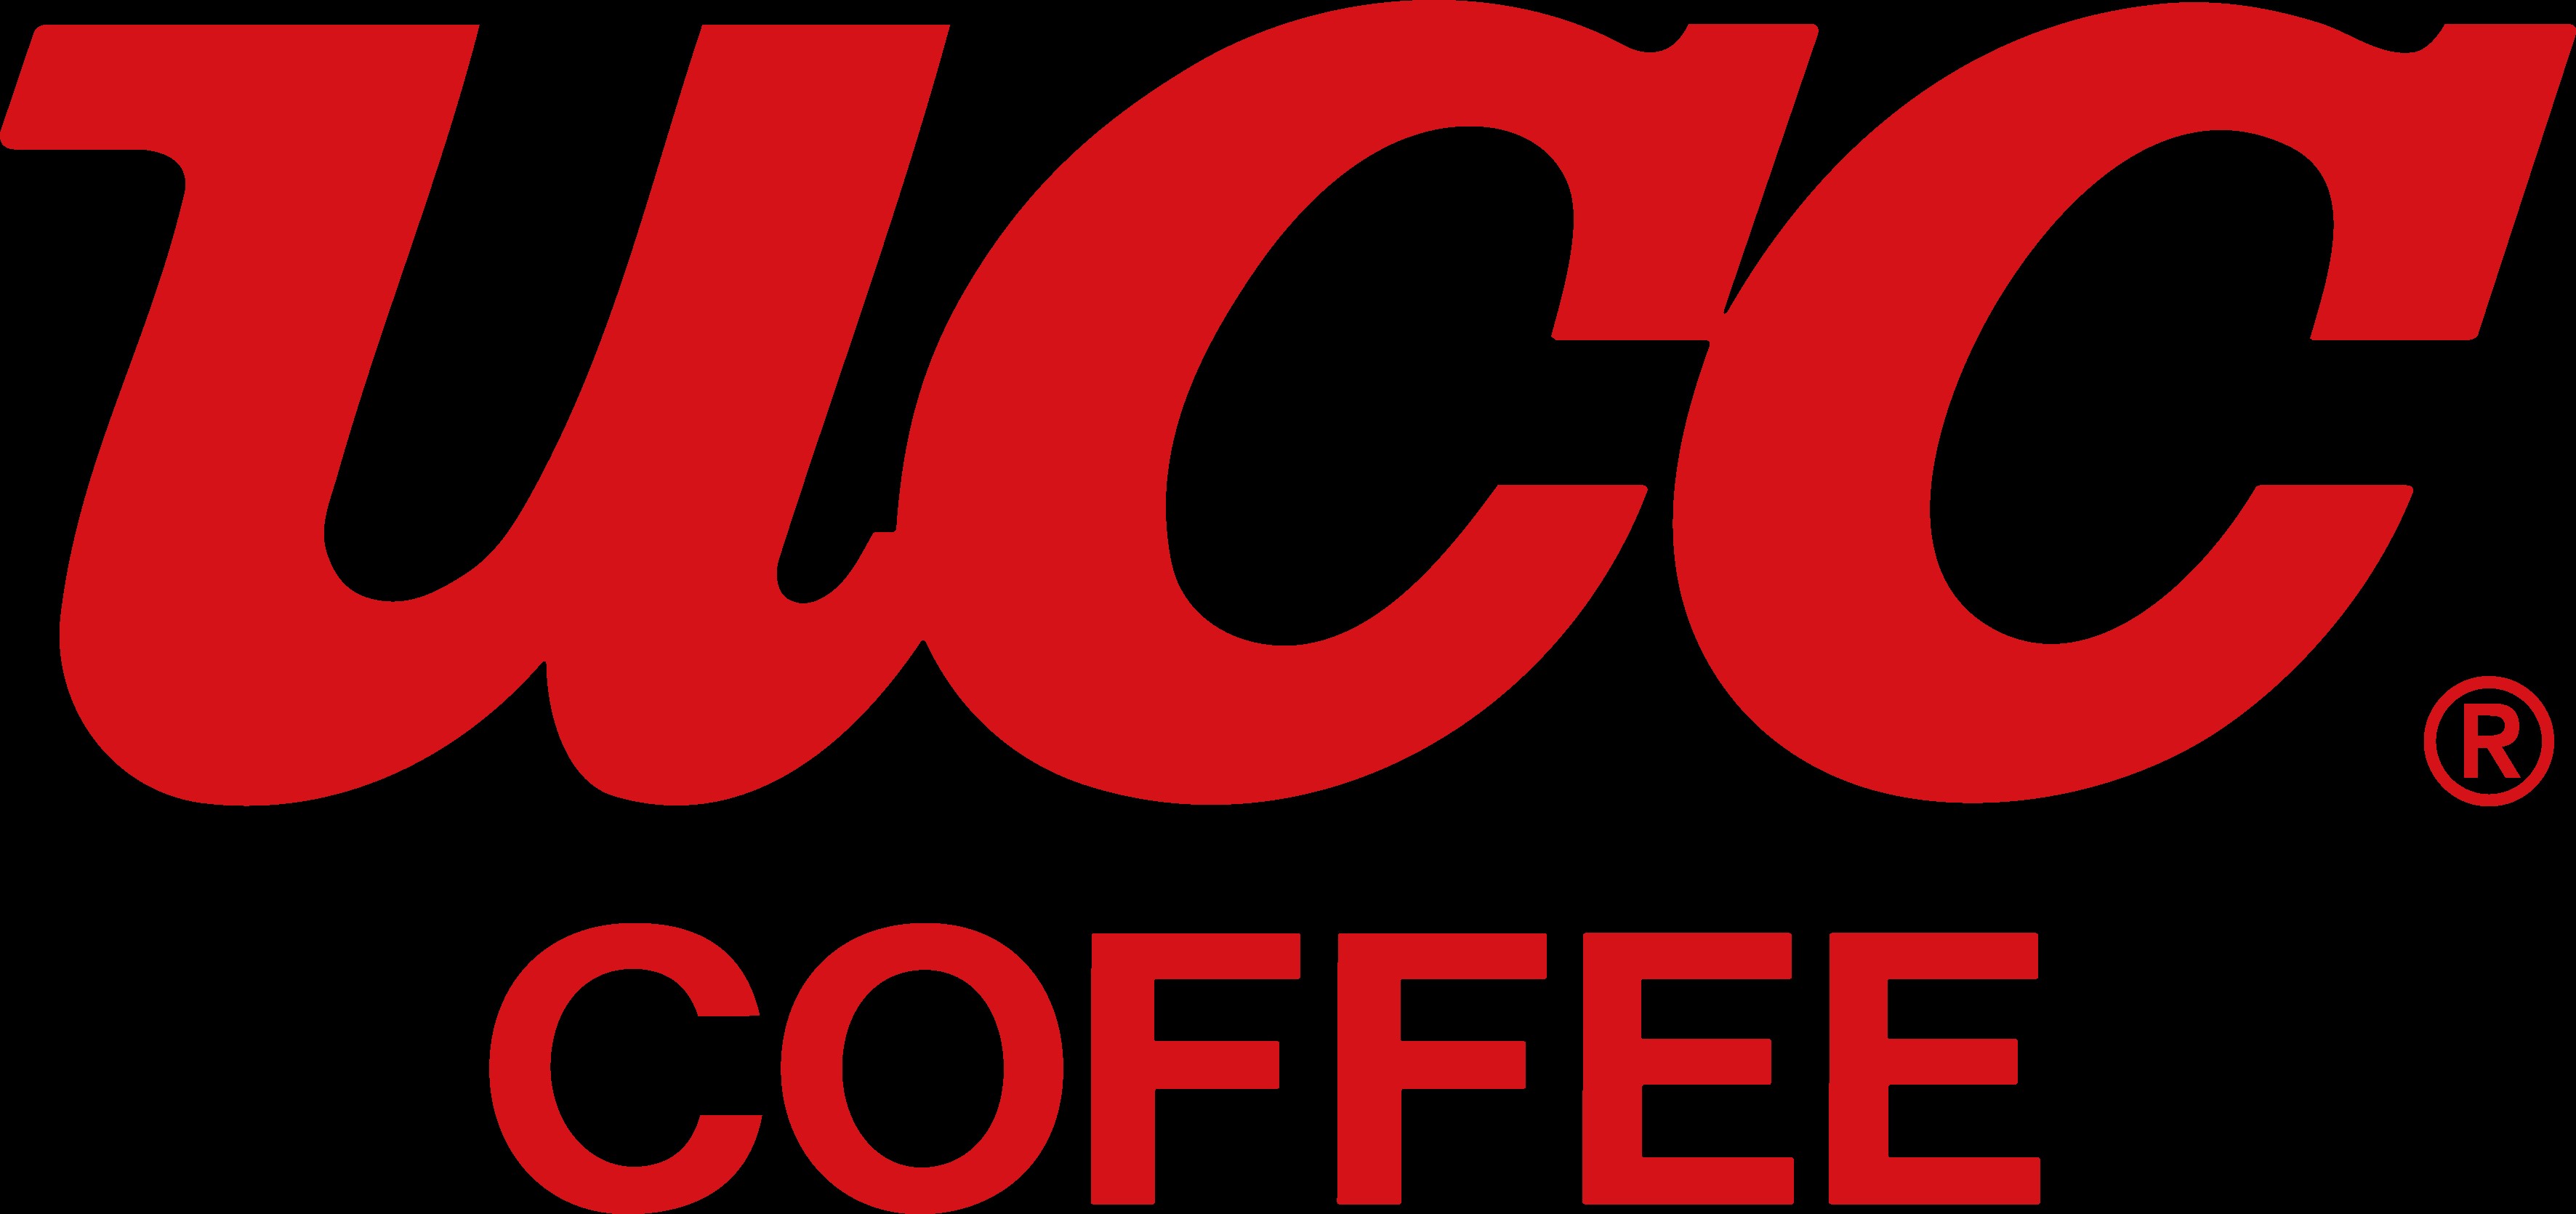 UCC Coffee UK & Ireland (Hot Beverage) image.